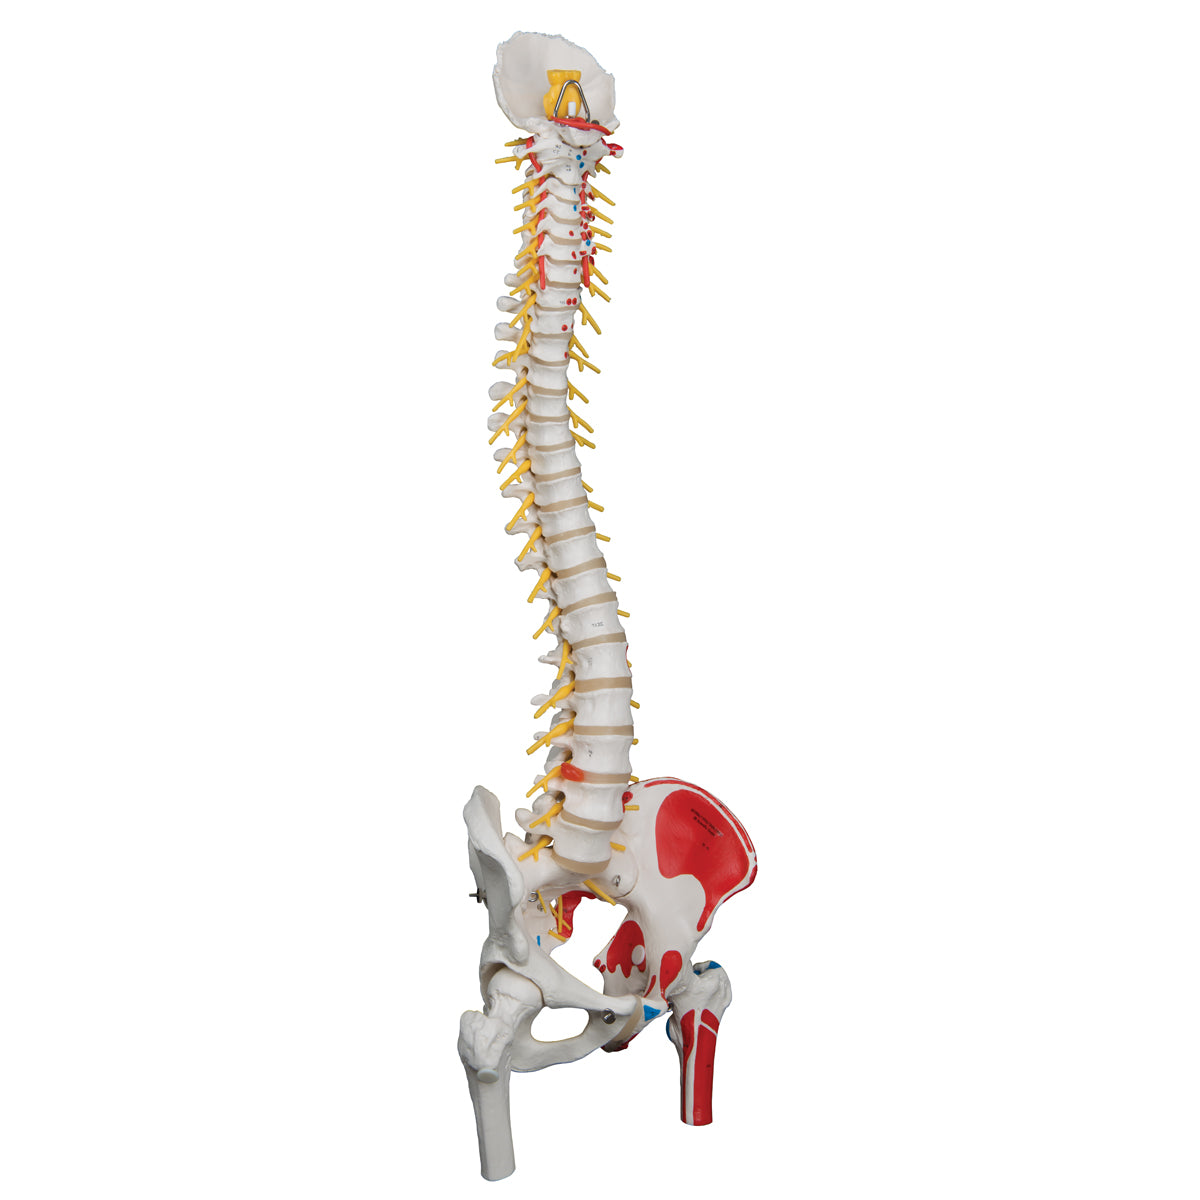 Flexibel modell av ryggraden med nerver, muskelindikationer och andra ben utan stativ